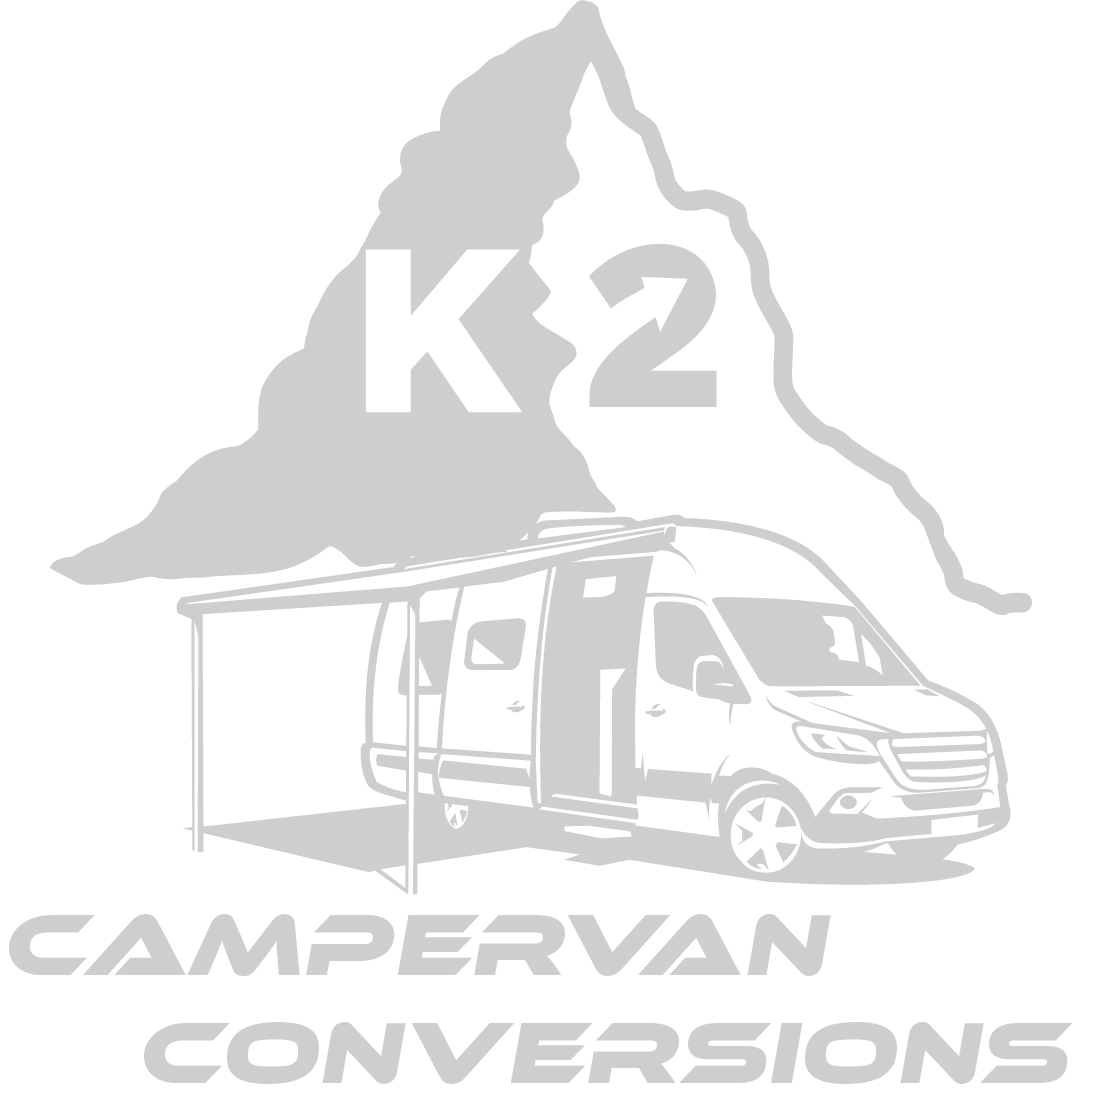 k2 mountain logo